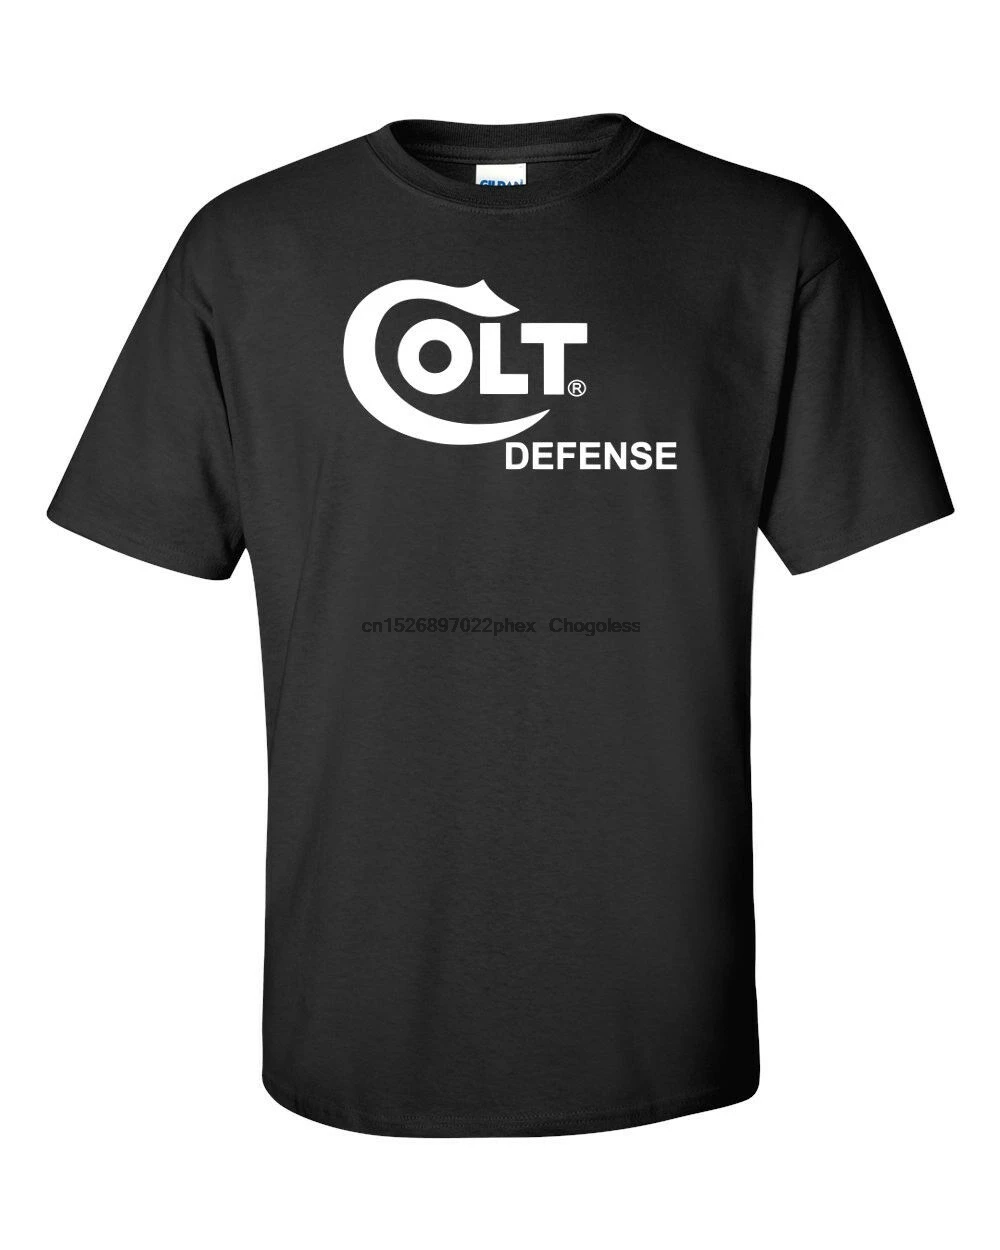 Футболка с белым логотипом Colt для защиты футболка бренда Gun оружия винтовки |